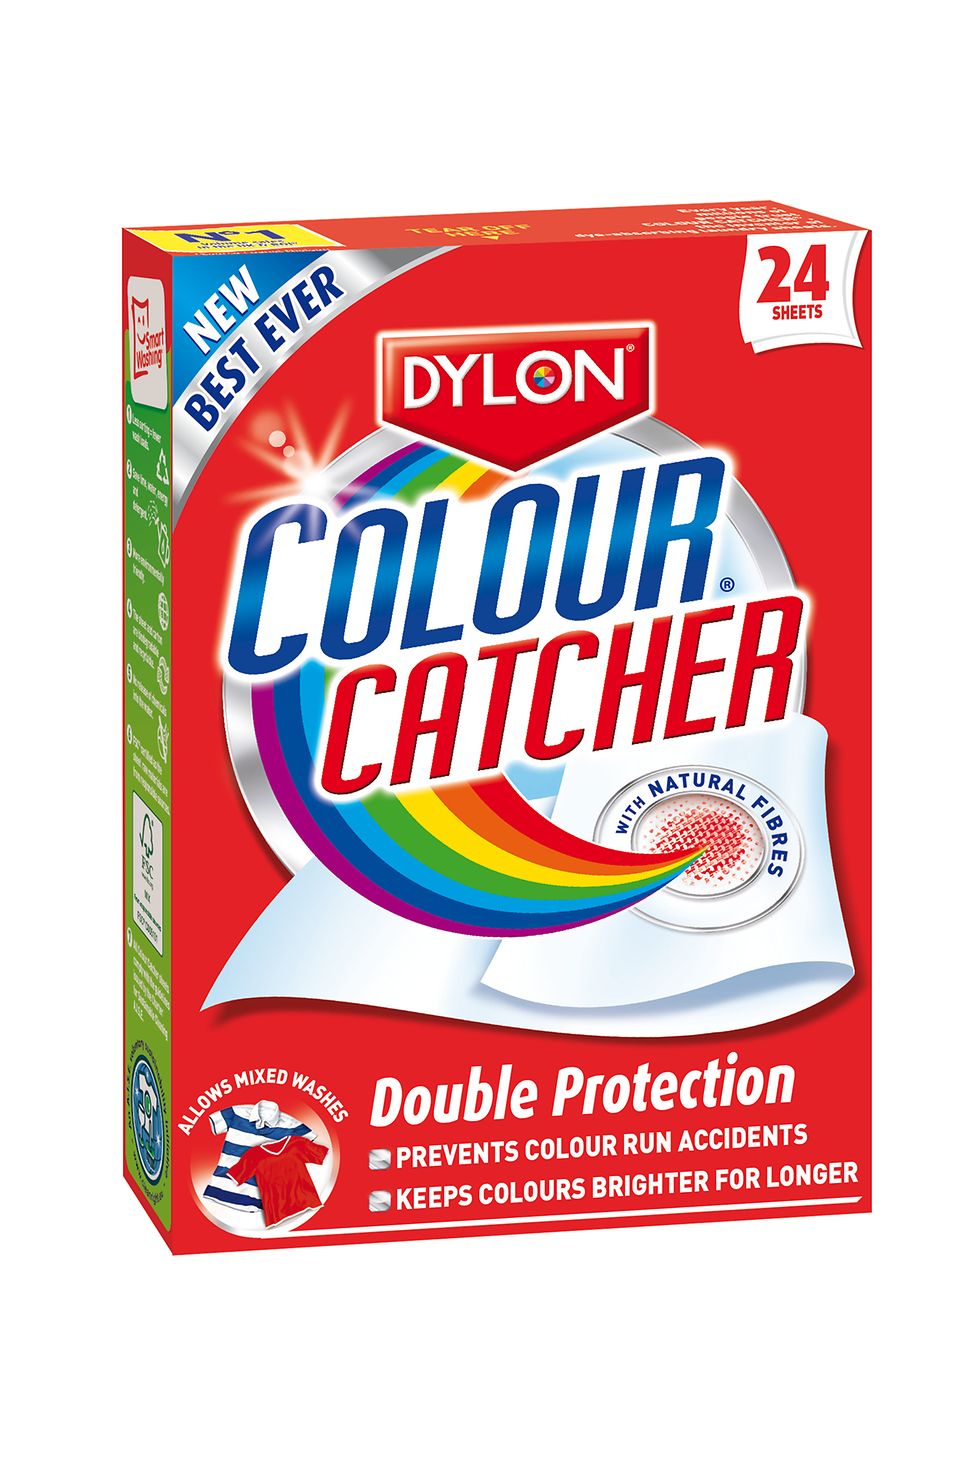 Dylon - Colour Catcher